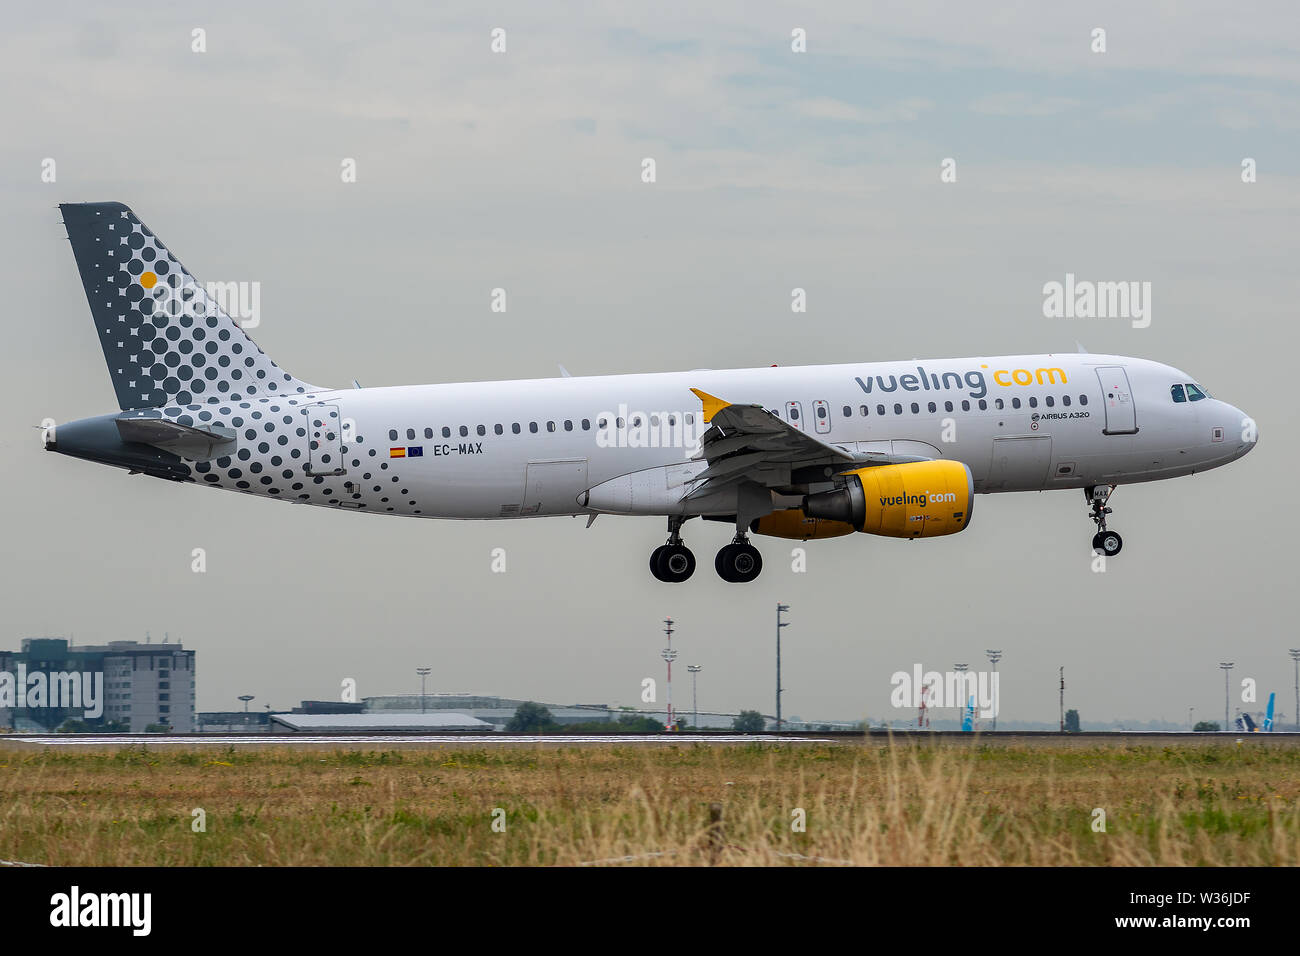 EC-MAX, le 11 juillet 2019, l'Airbus A320-214-4478 l'atterrissage à l'aéroport de Paris Charles de Gaulle à la fin de Vol Vueling vy2852 à partir de Palma de Majorque Banque D'Images